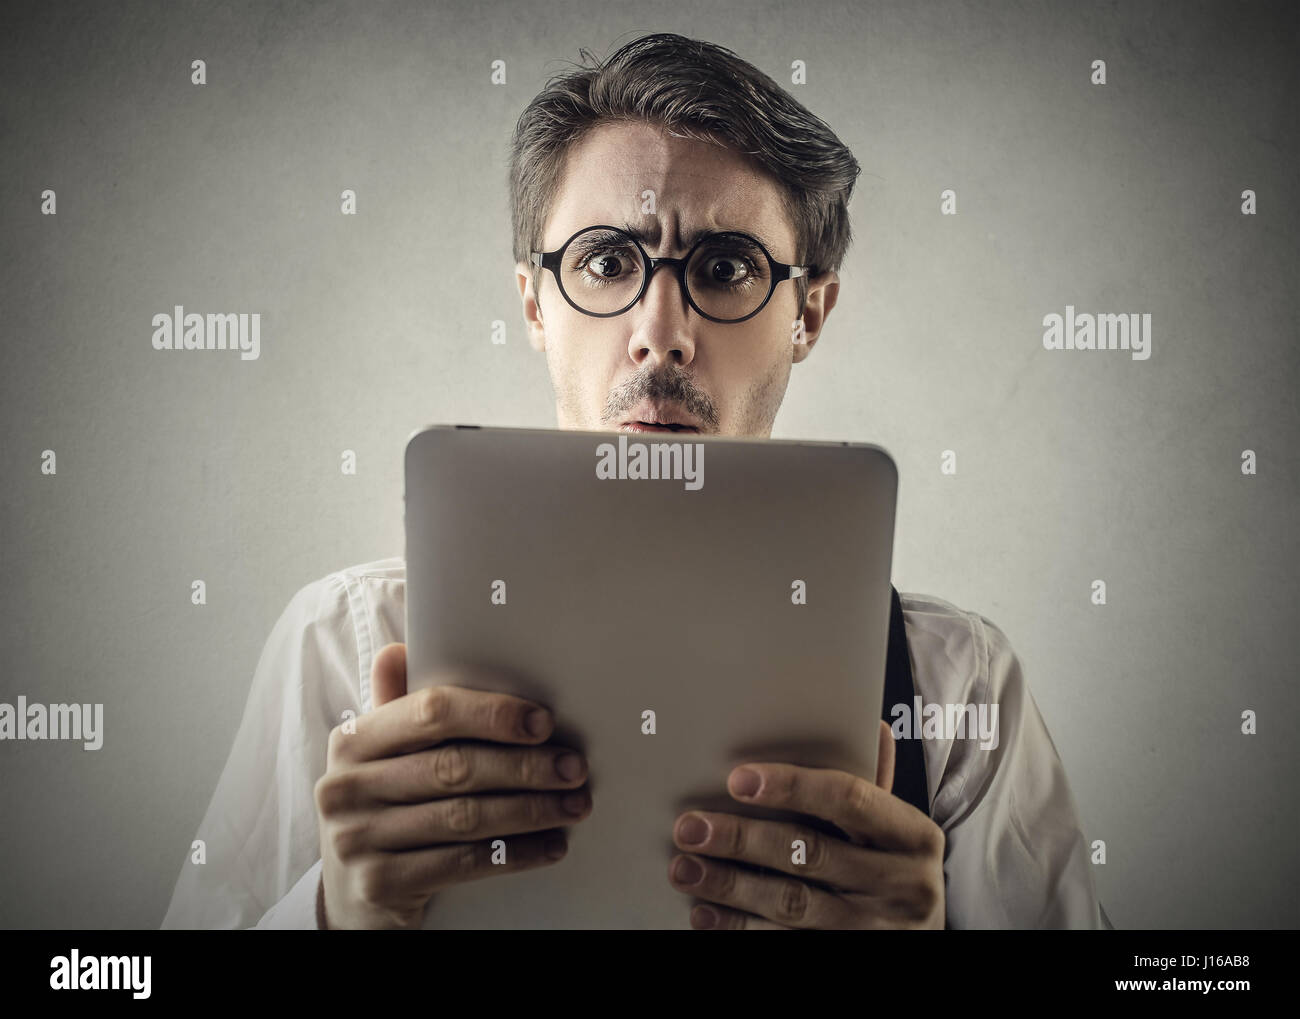 Confundido hombre mirando el tablet Foto de stock